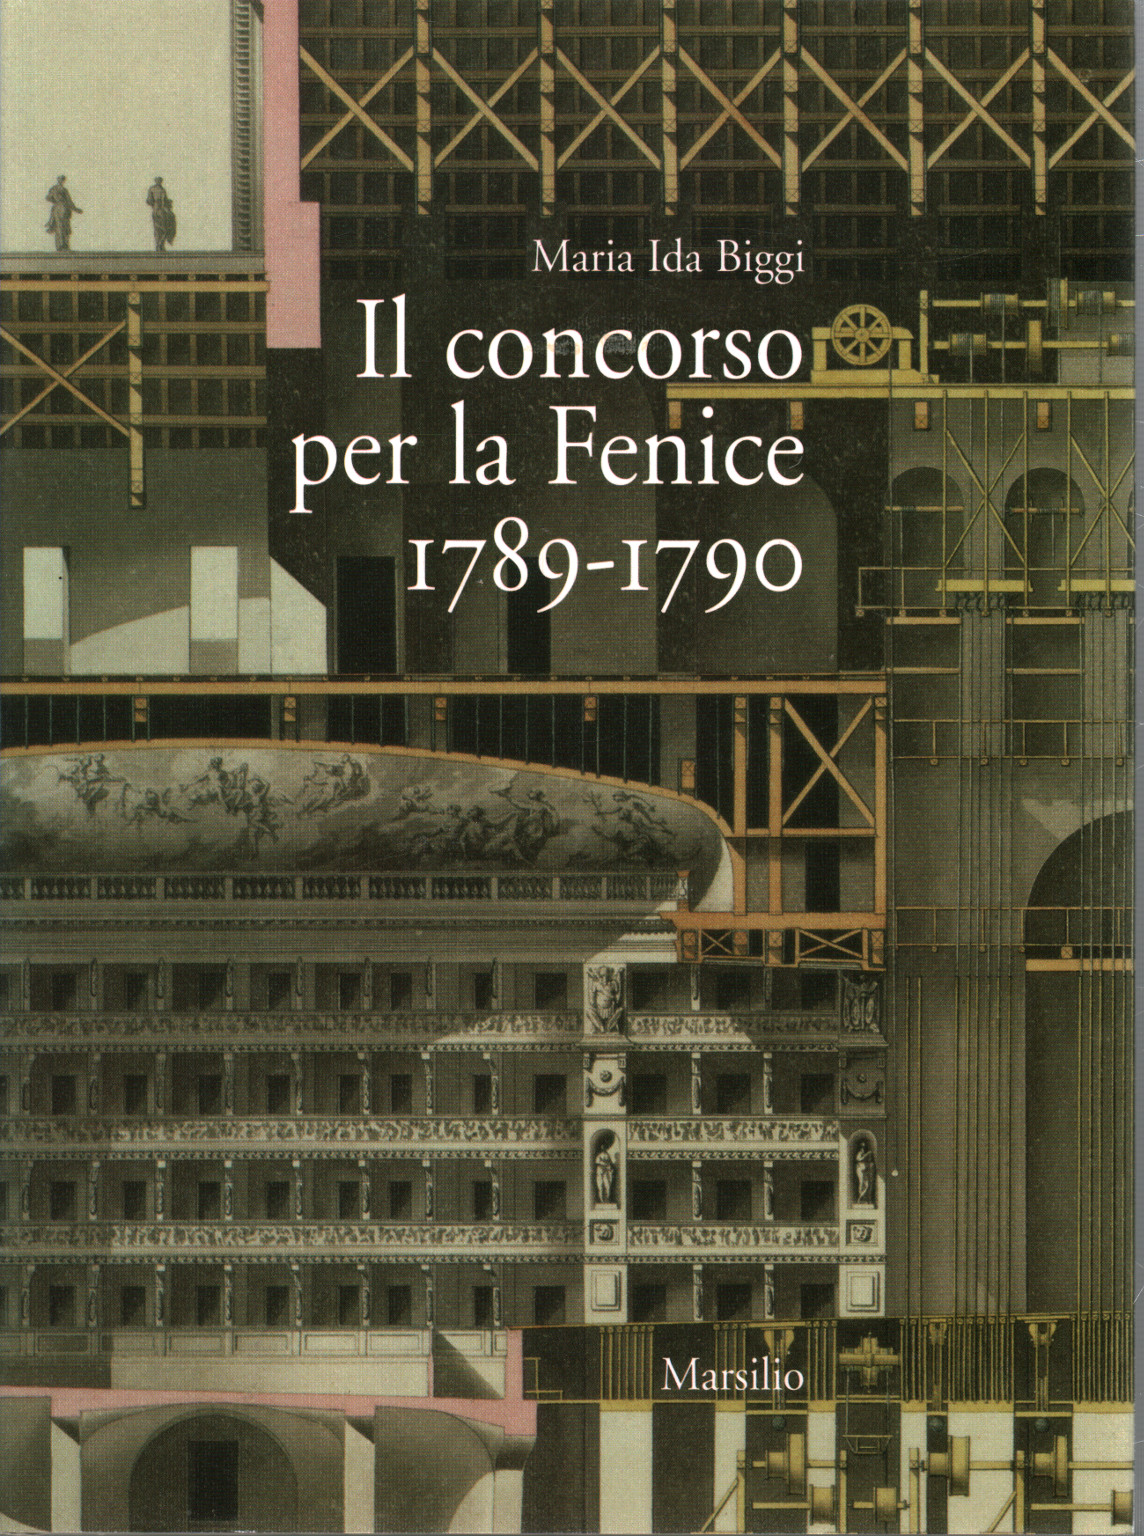 Il concorso per la Fenice 1789-1790, s.a.